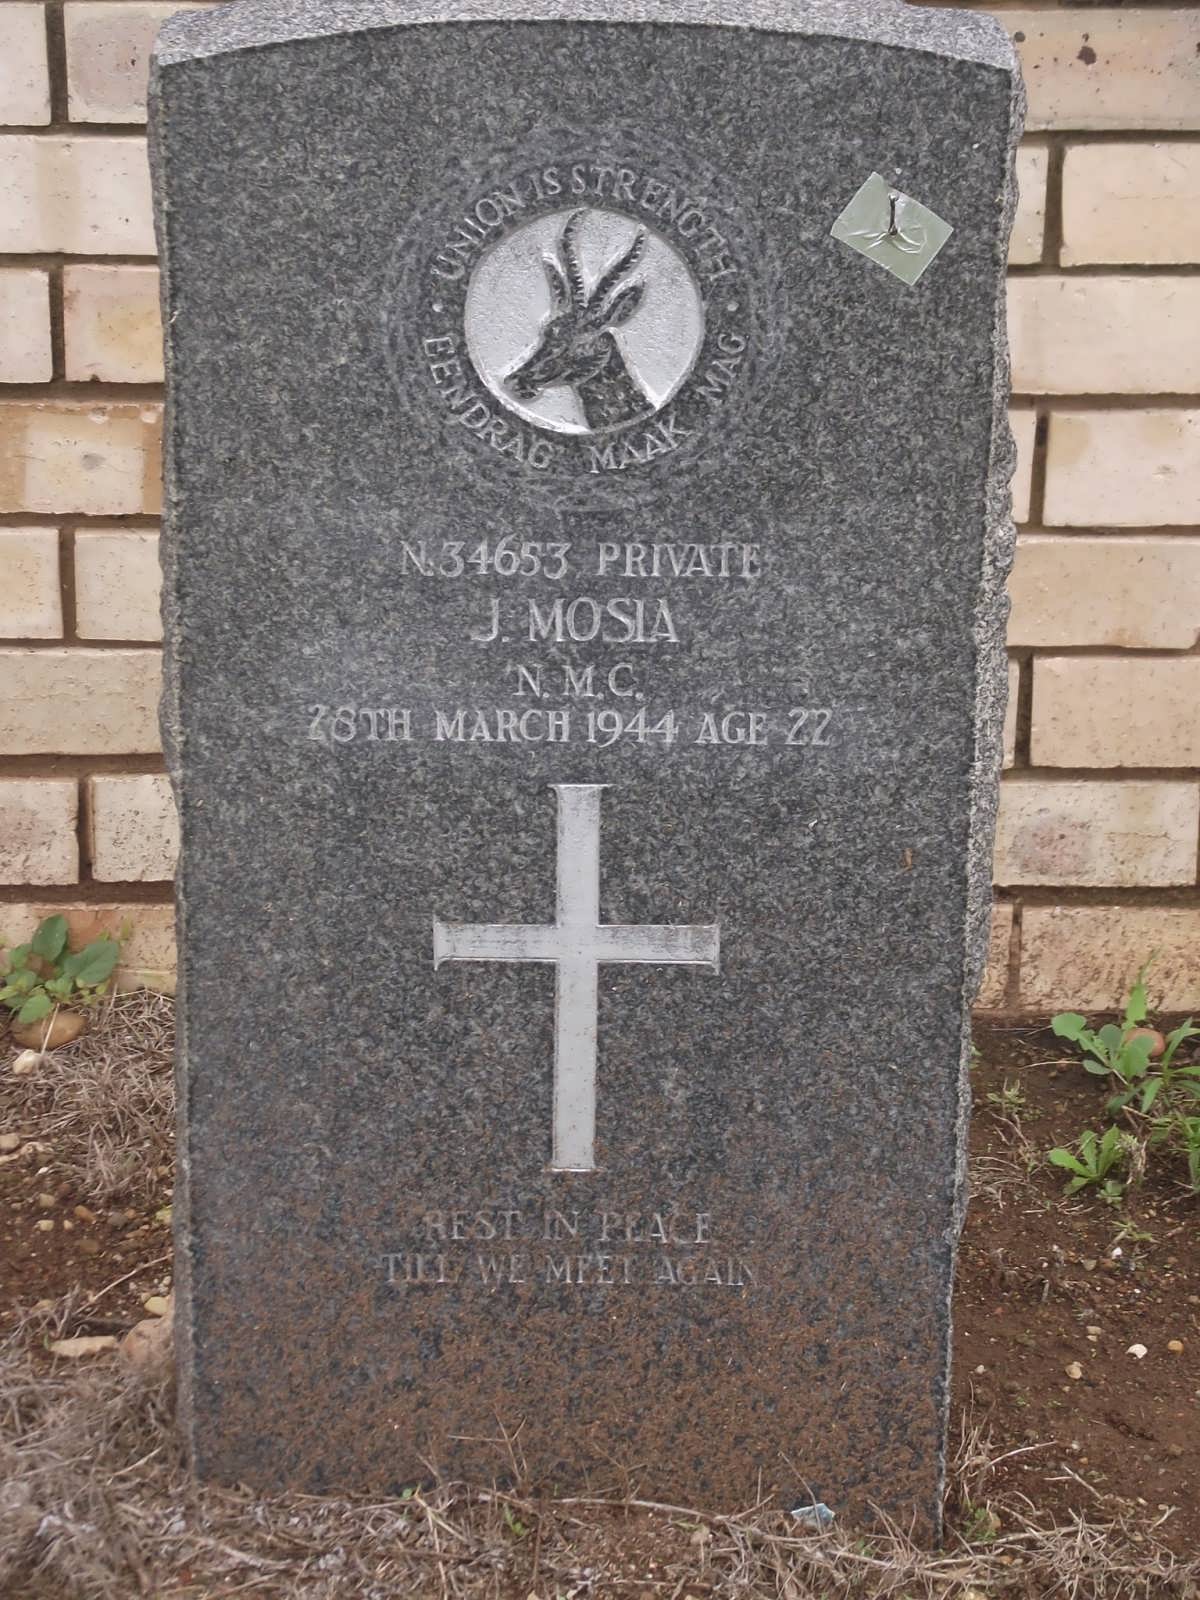 MOSIA J. -1944